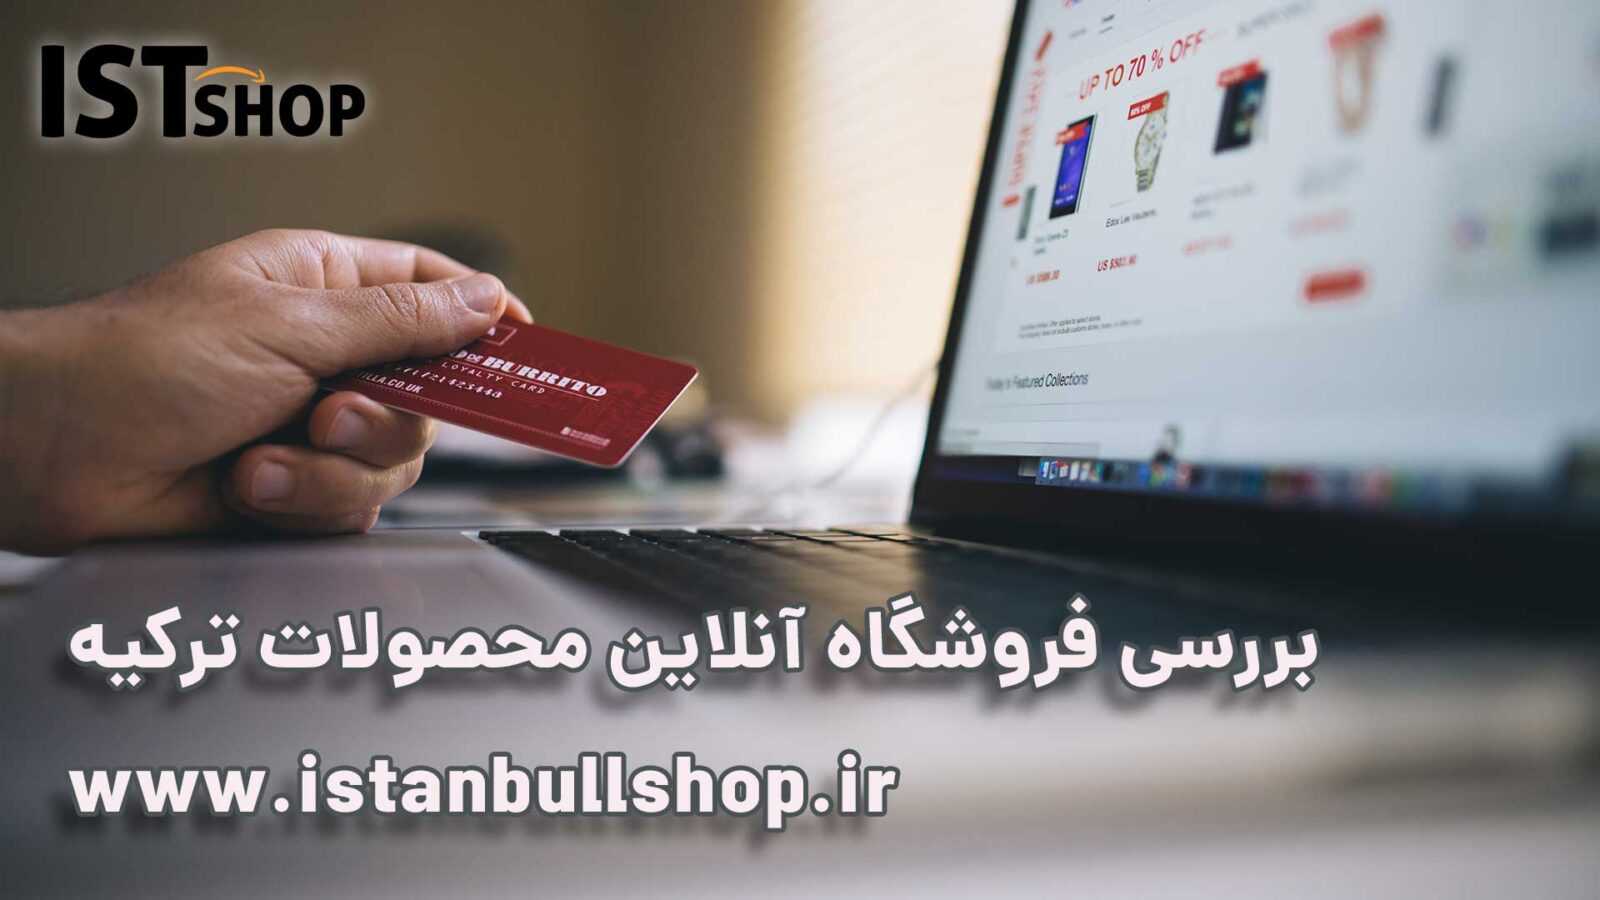 فروشگاه آنلاین محصولات ترکیه